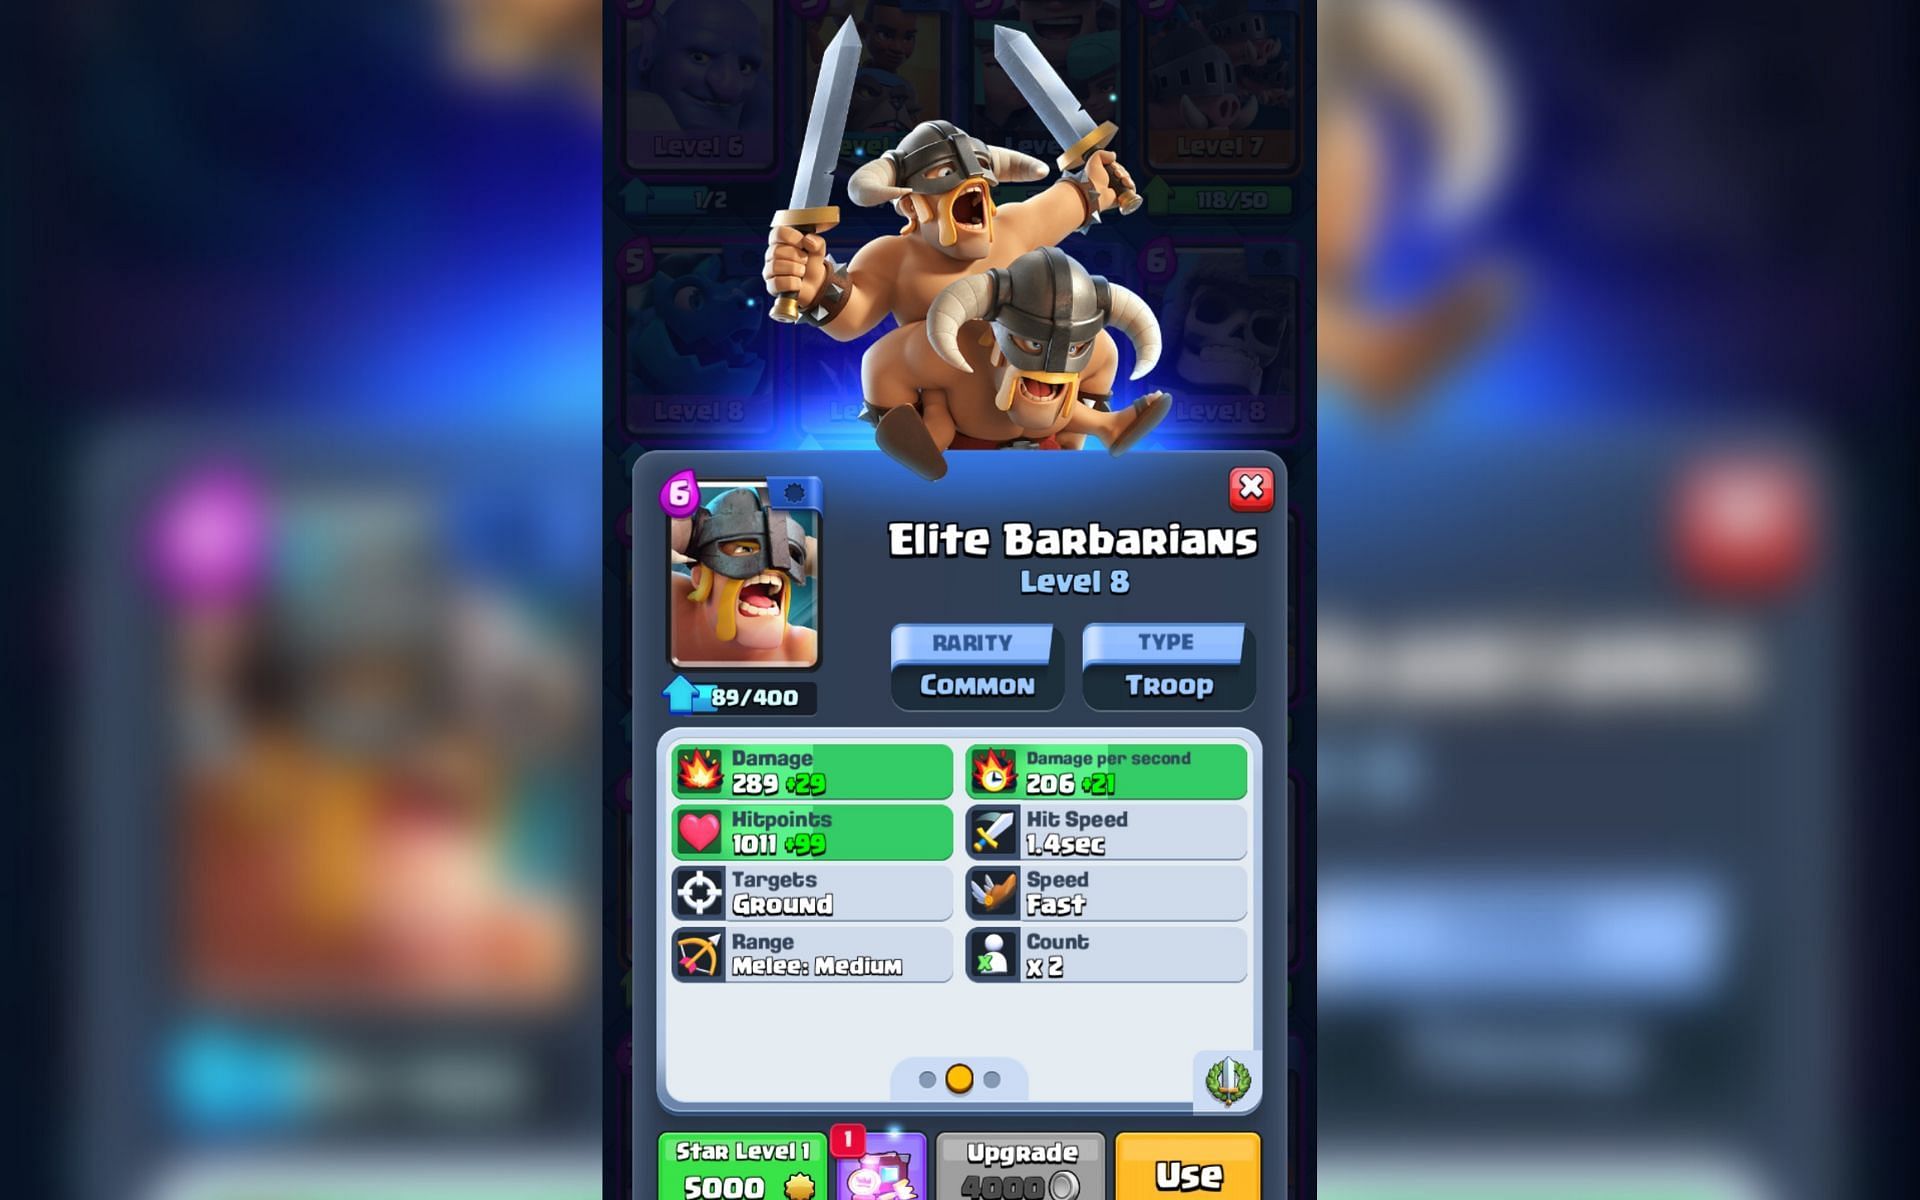 Elite Barbarians in Clash Royale (Image via Sportskeeda)